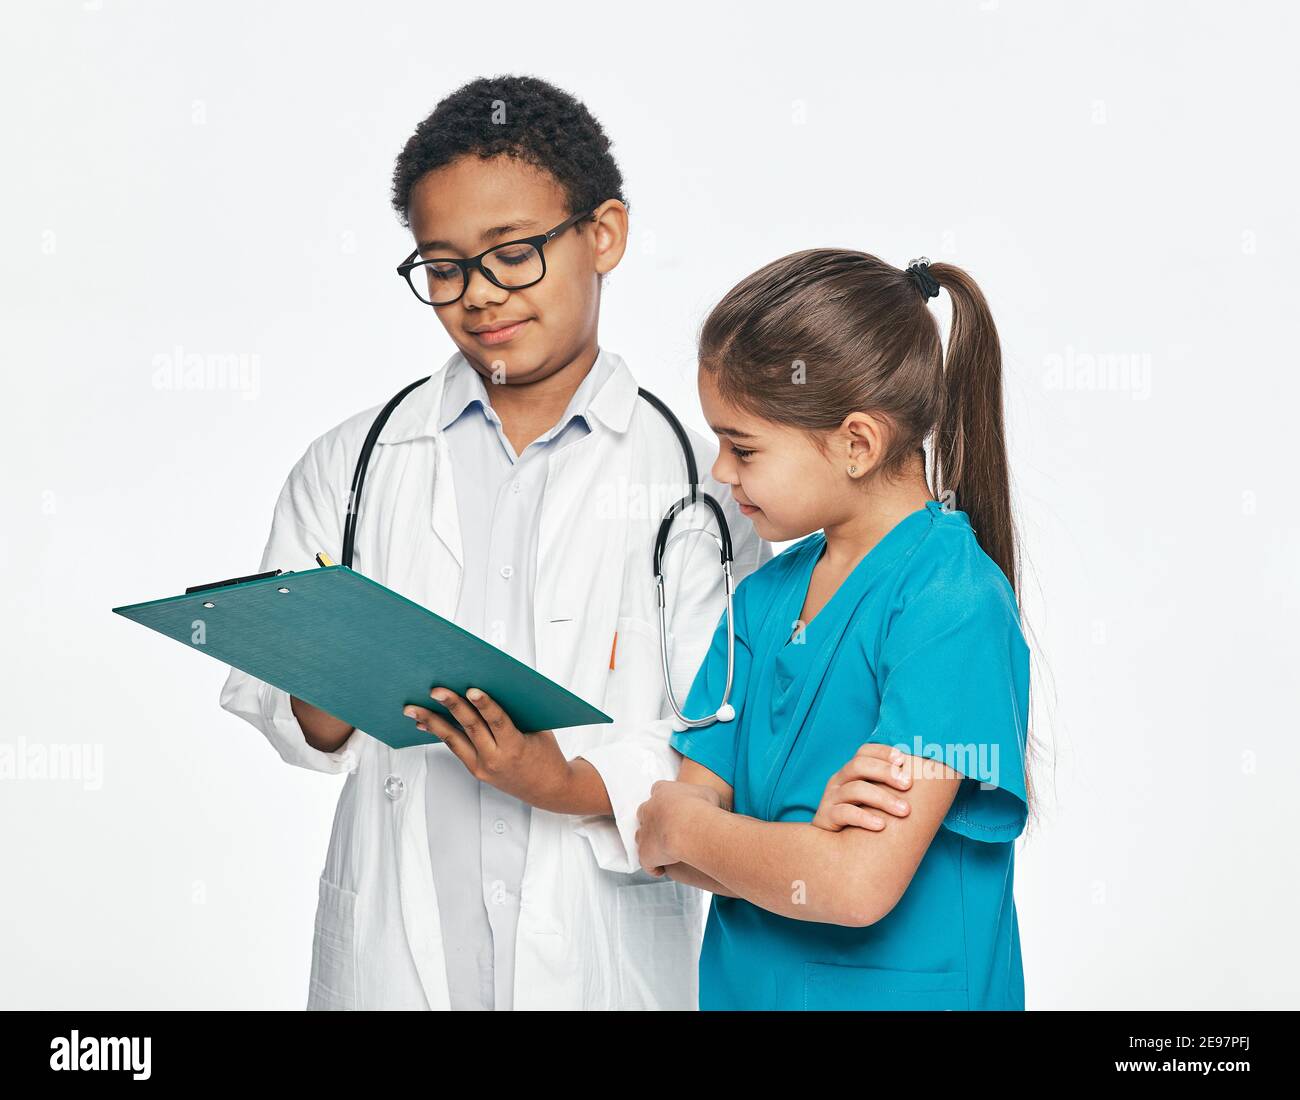 Zwei Kinder spielen medizinisches Personal und wählen einen medizinischen Beruf. Consilium eines Jungen, der Arzt praktiziert, und einer kleinen Krankenschwester Stockfoto